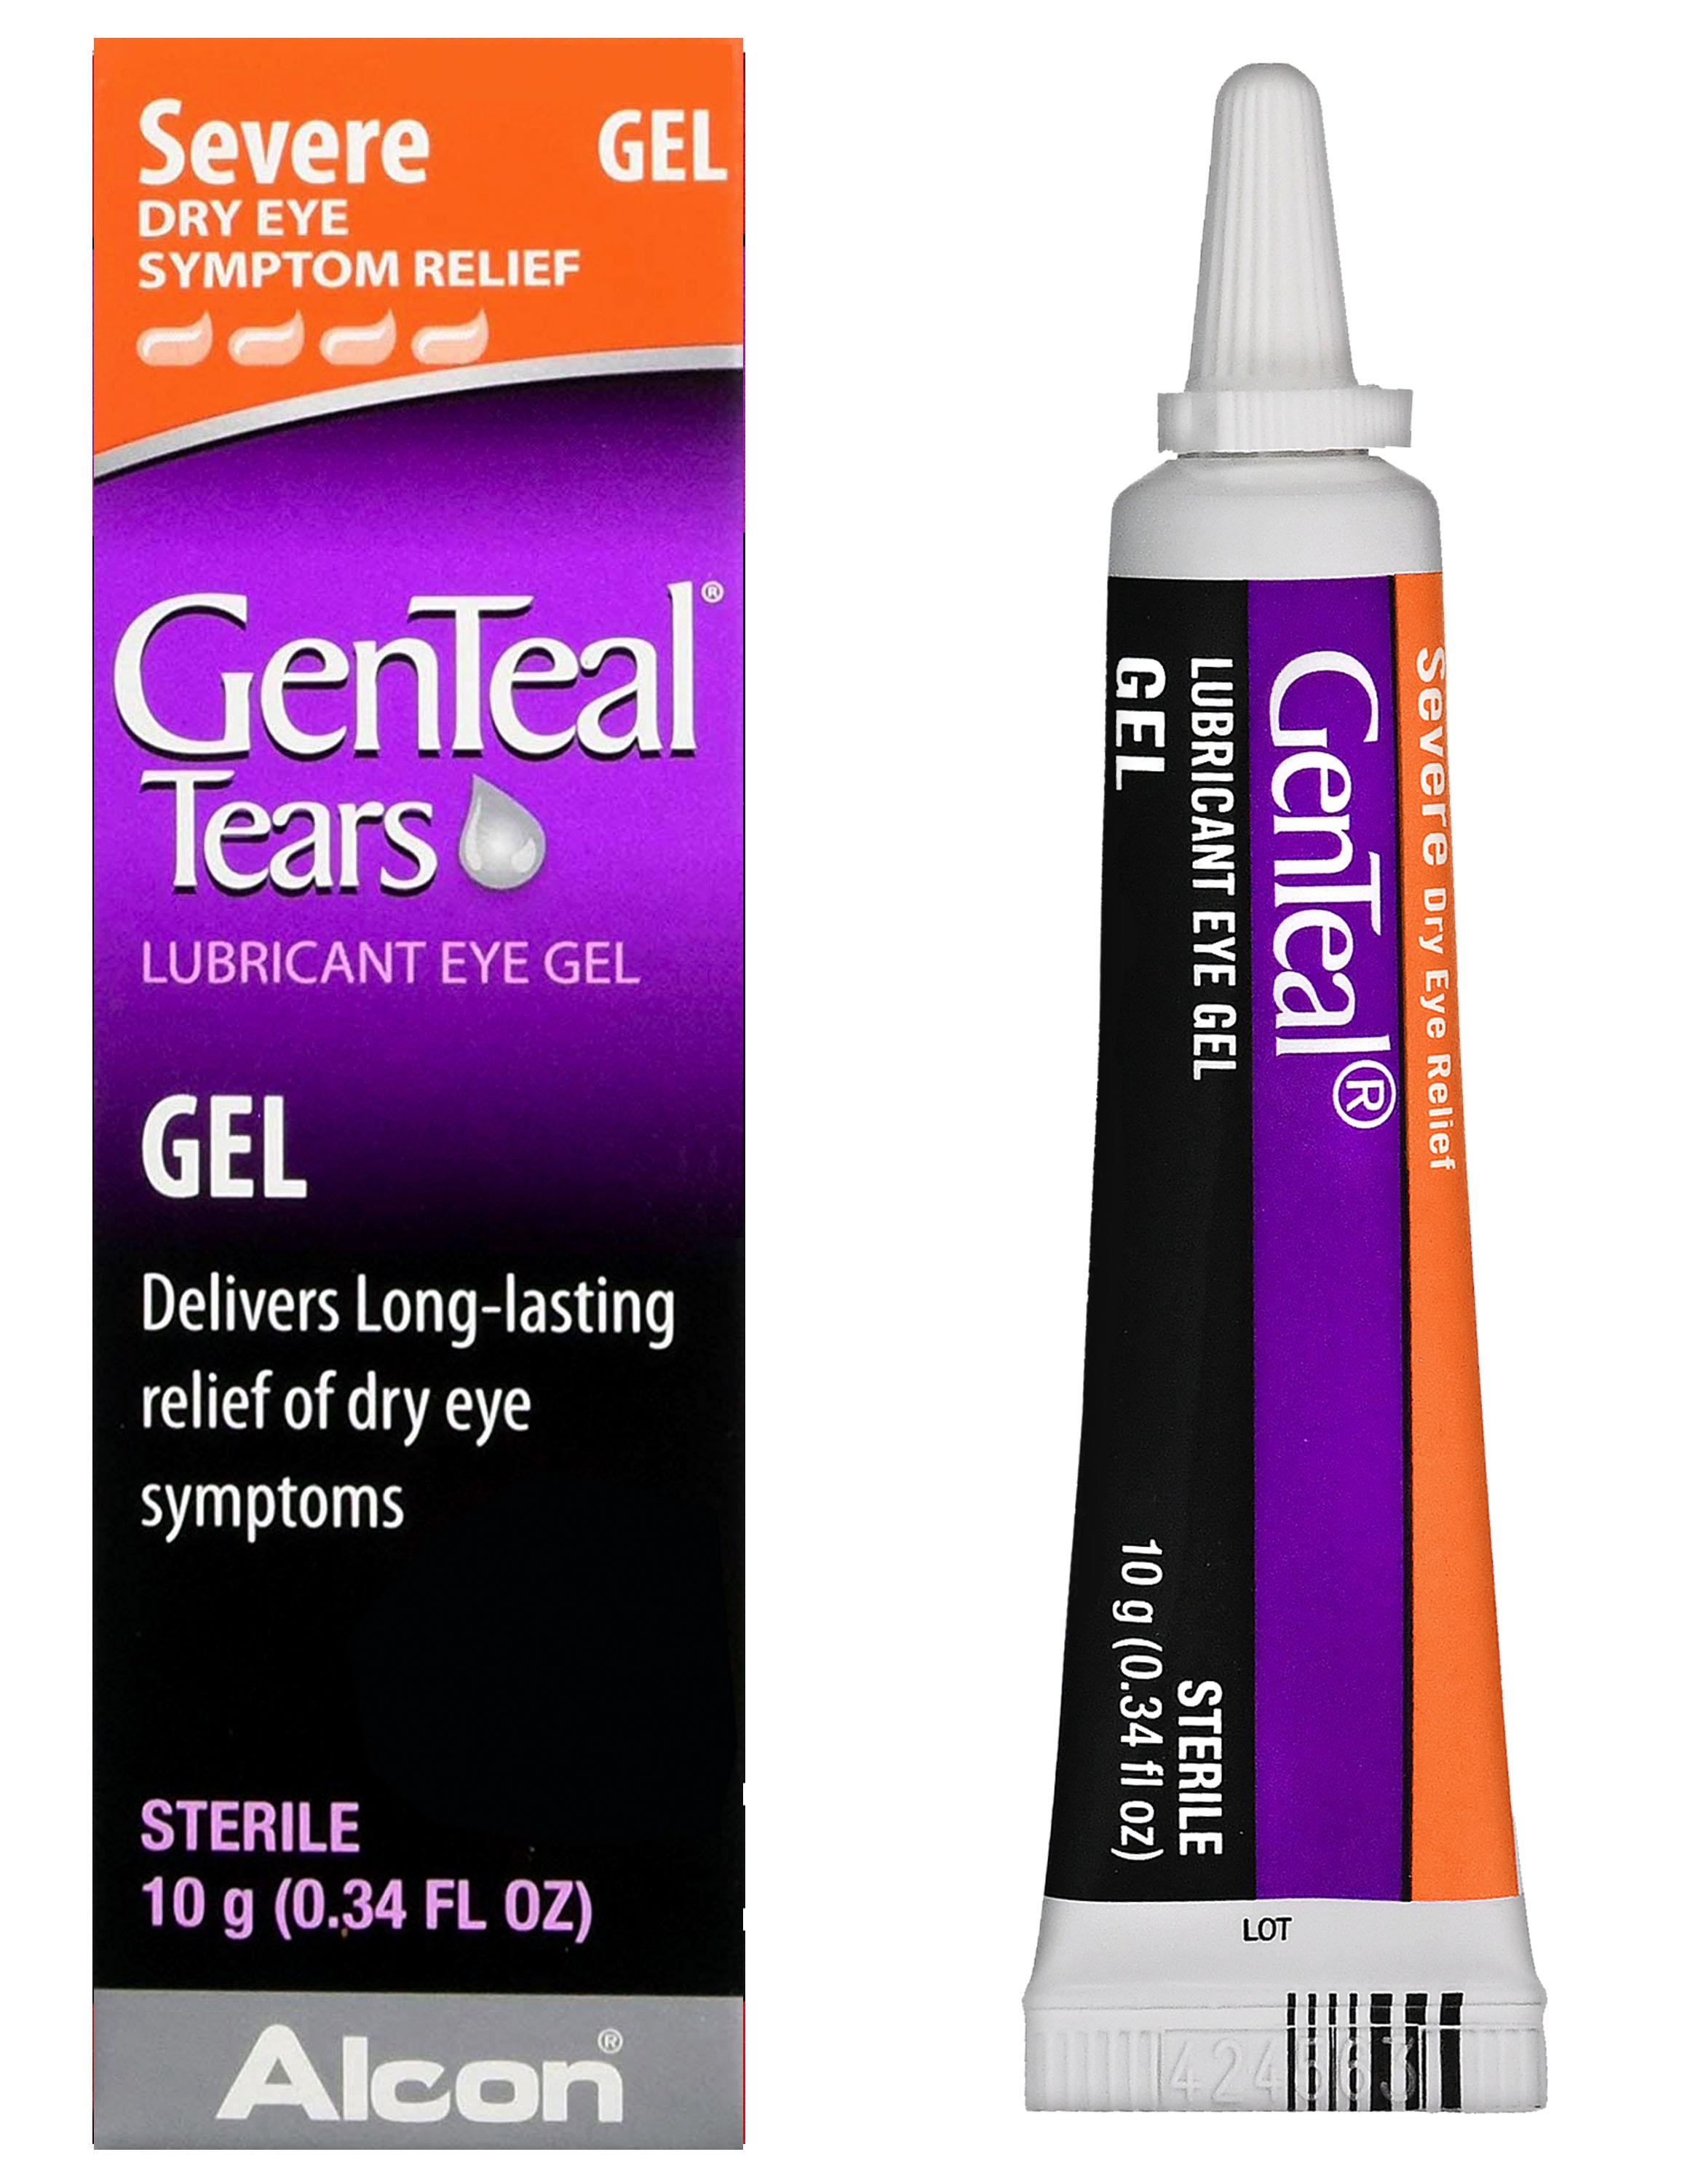 GenTeal Tears Severe Dry Eye Lubricant Gel -